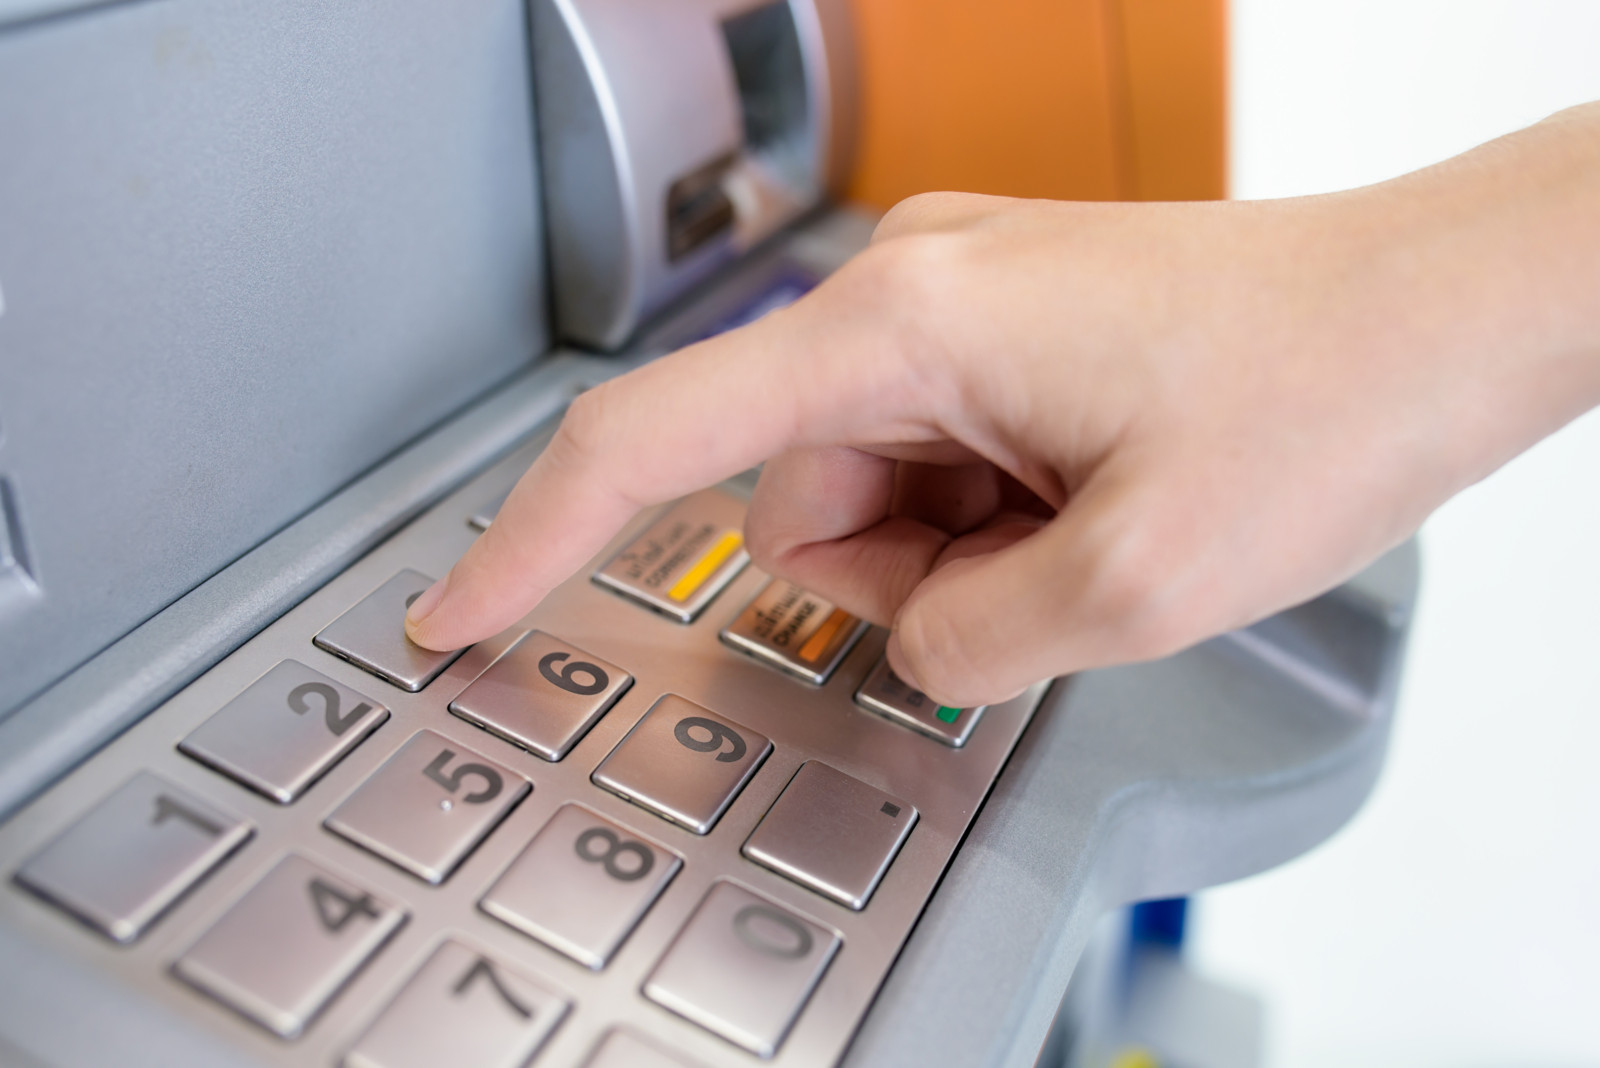 Betrügern an Geldautomaten kann Edge Computing sofort das Handwerk legen: Durch Auswertung von Videos und Verhaltensanalysen vor Ort und in Echtzeit schaltet sich der Automat bei Verdacht sofort selbst ab.